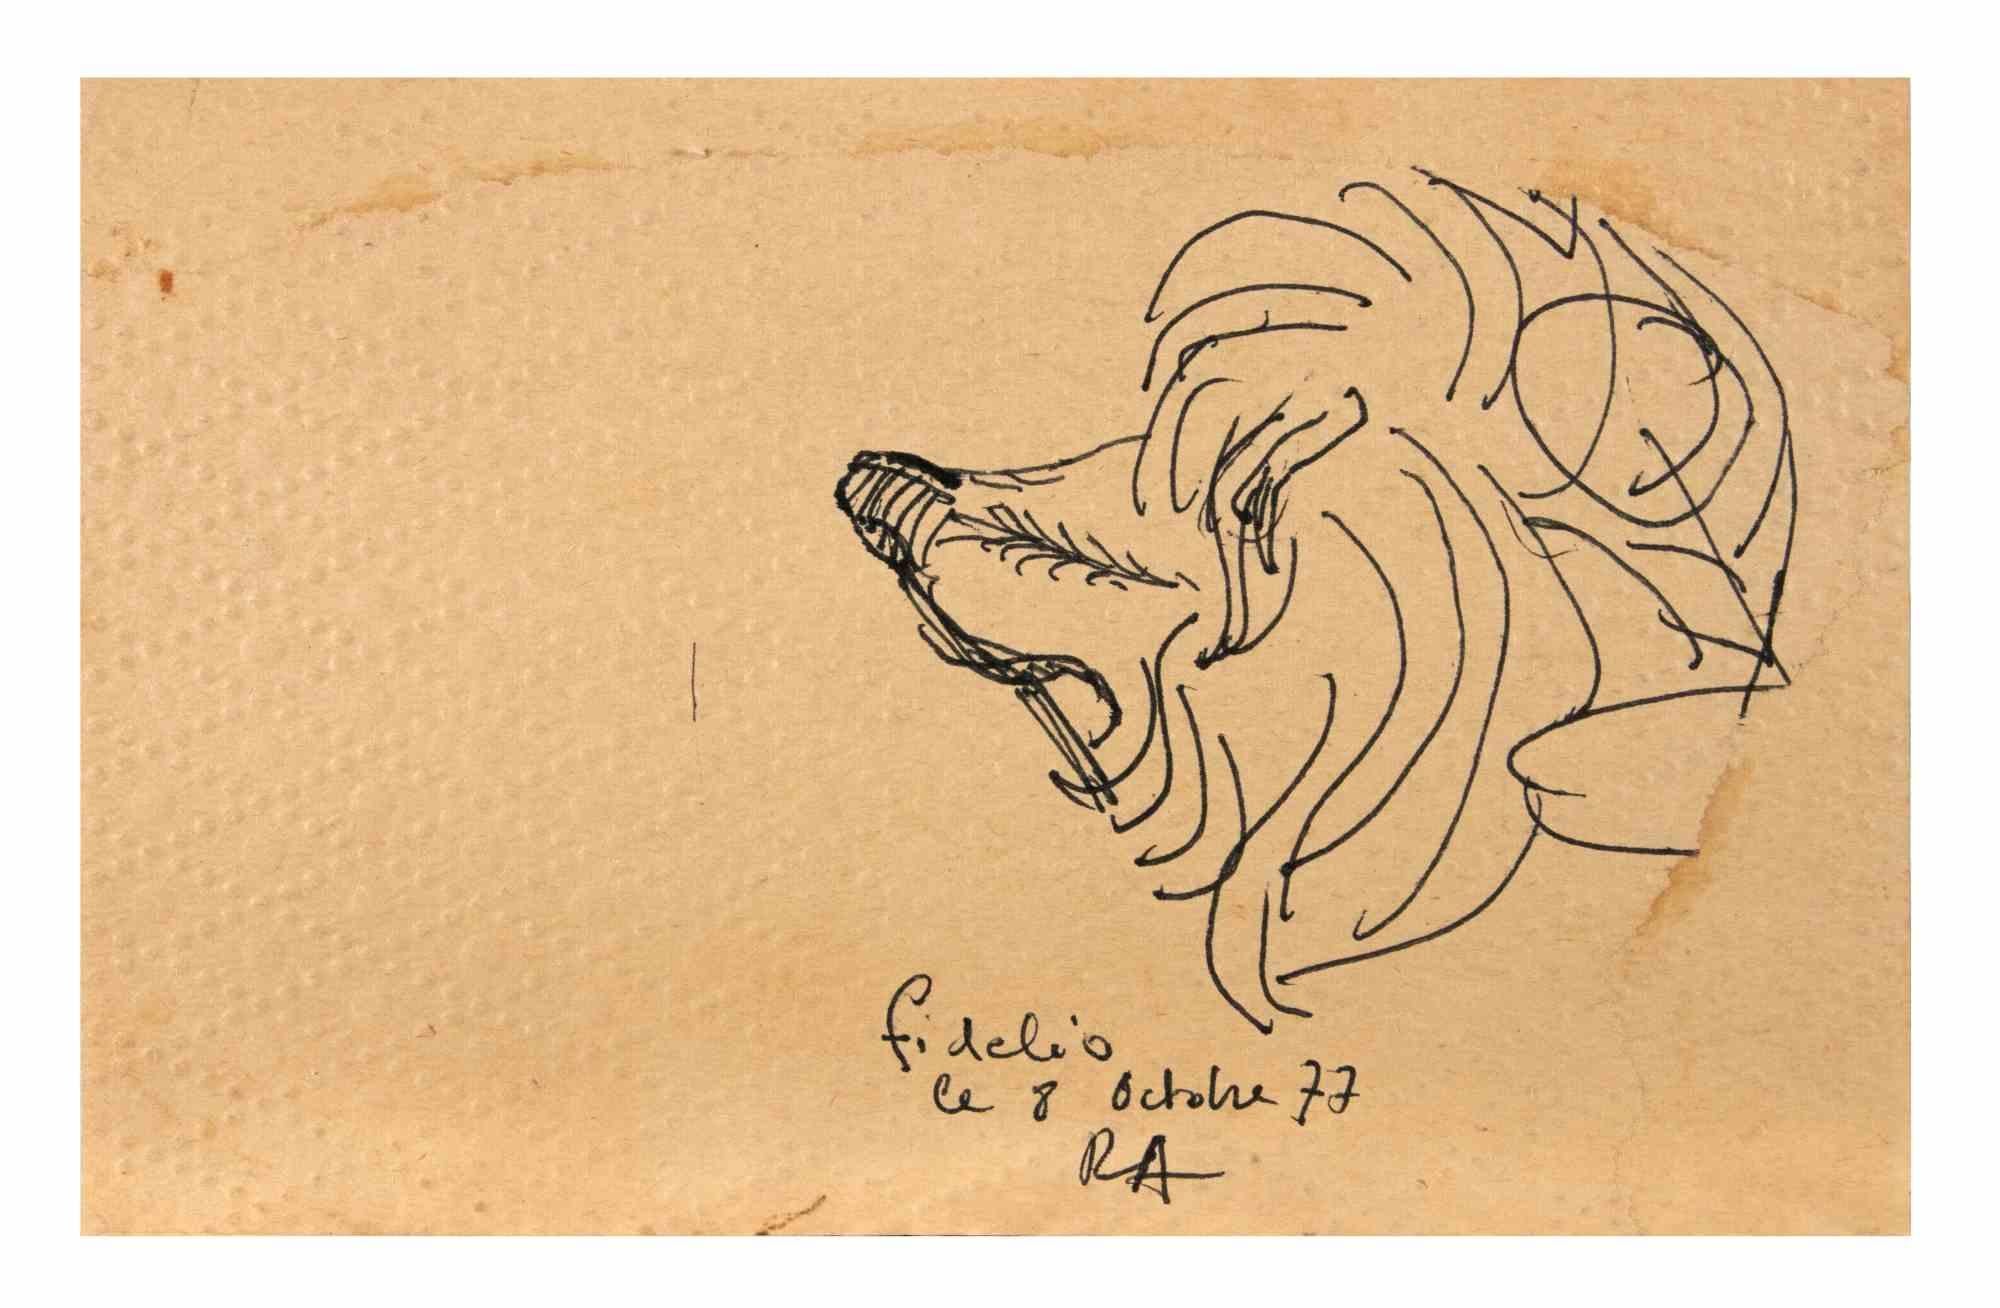 Fidelio est un dessin à l'encre de Chine réalisé par Reynold Arnould.  (Le Havre 1919 - Parigi 1980).

Bon état sur un petit papier jauni.

Monogrammé, titré et daté dans la marge inférieure.

Reynold Arnould est né au Havre, en France, en 1919. Il